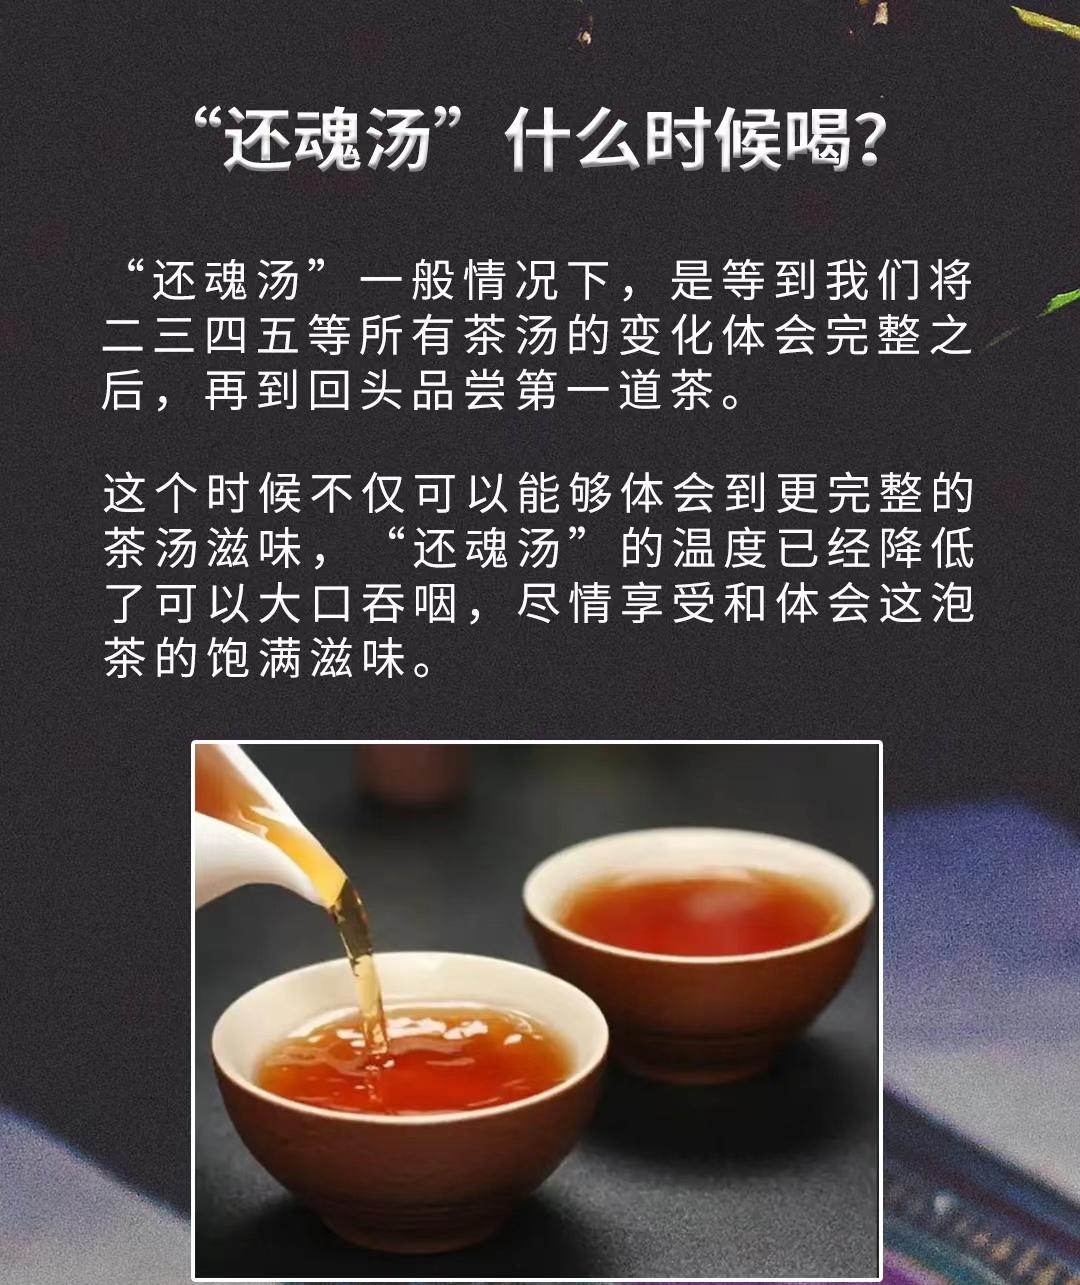 紫阳富硒茶销售额排名